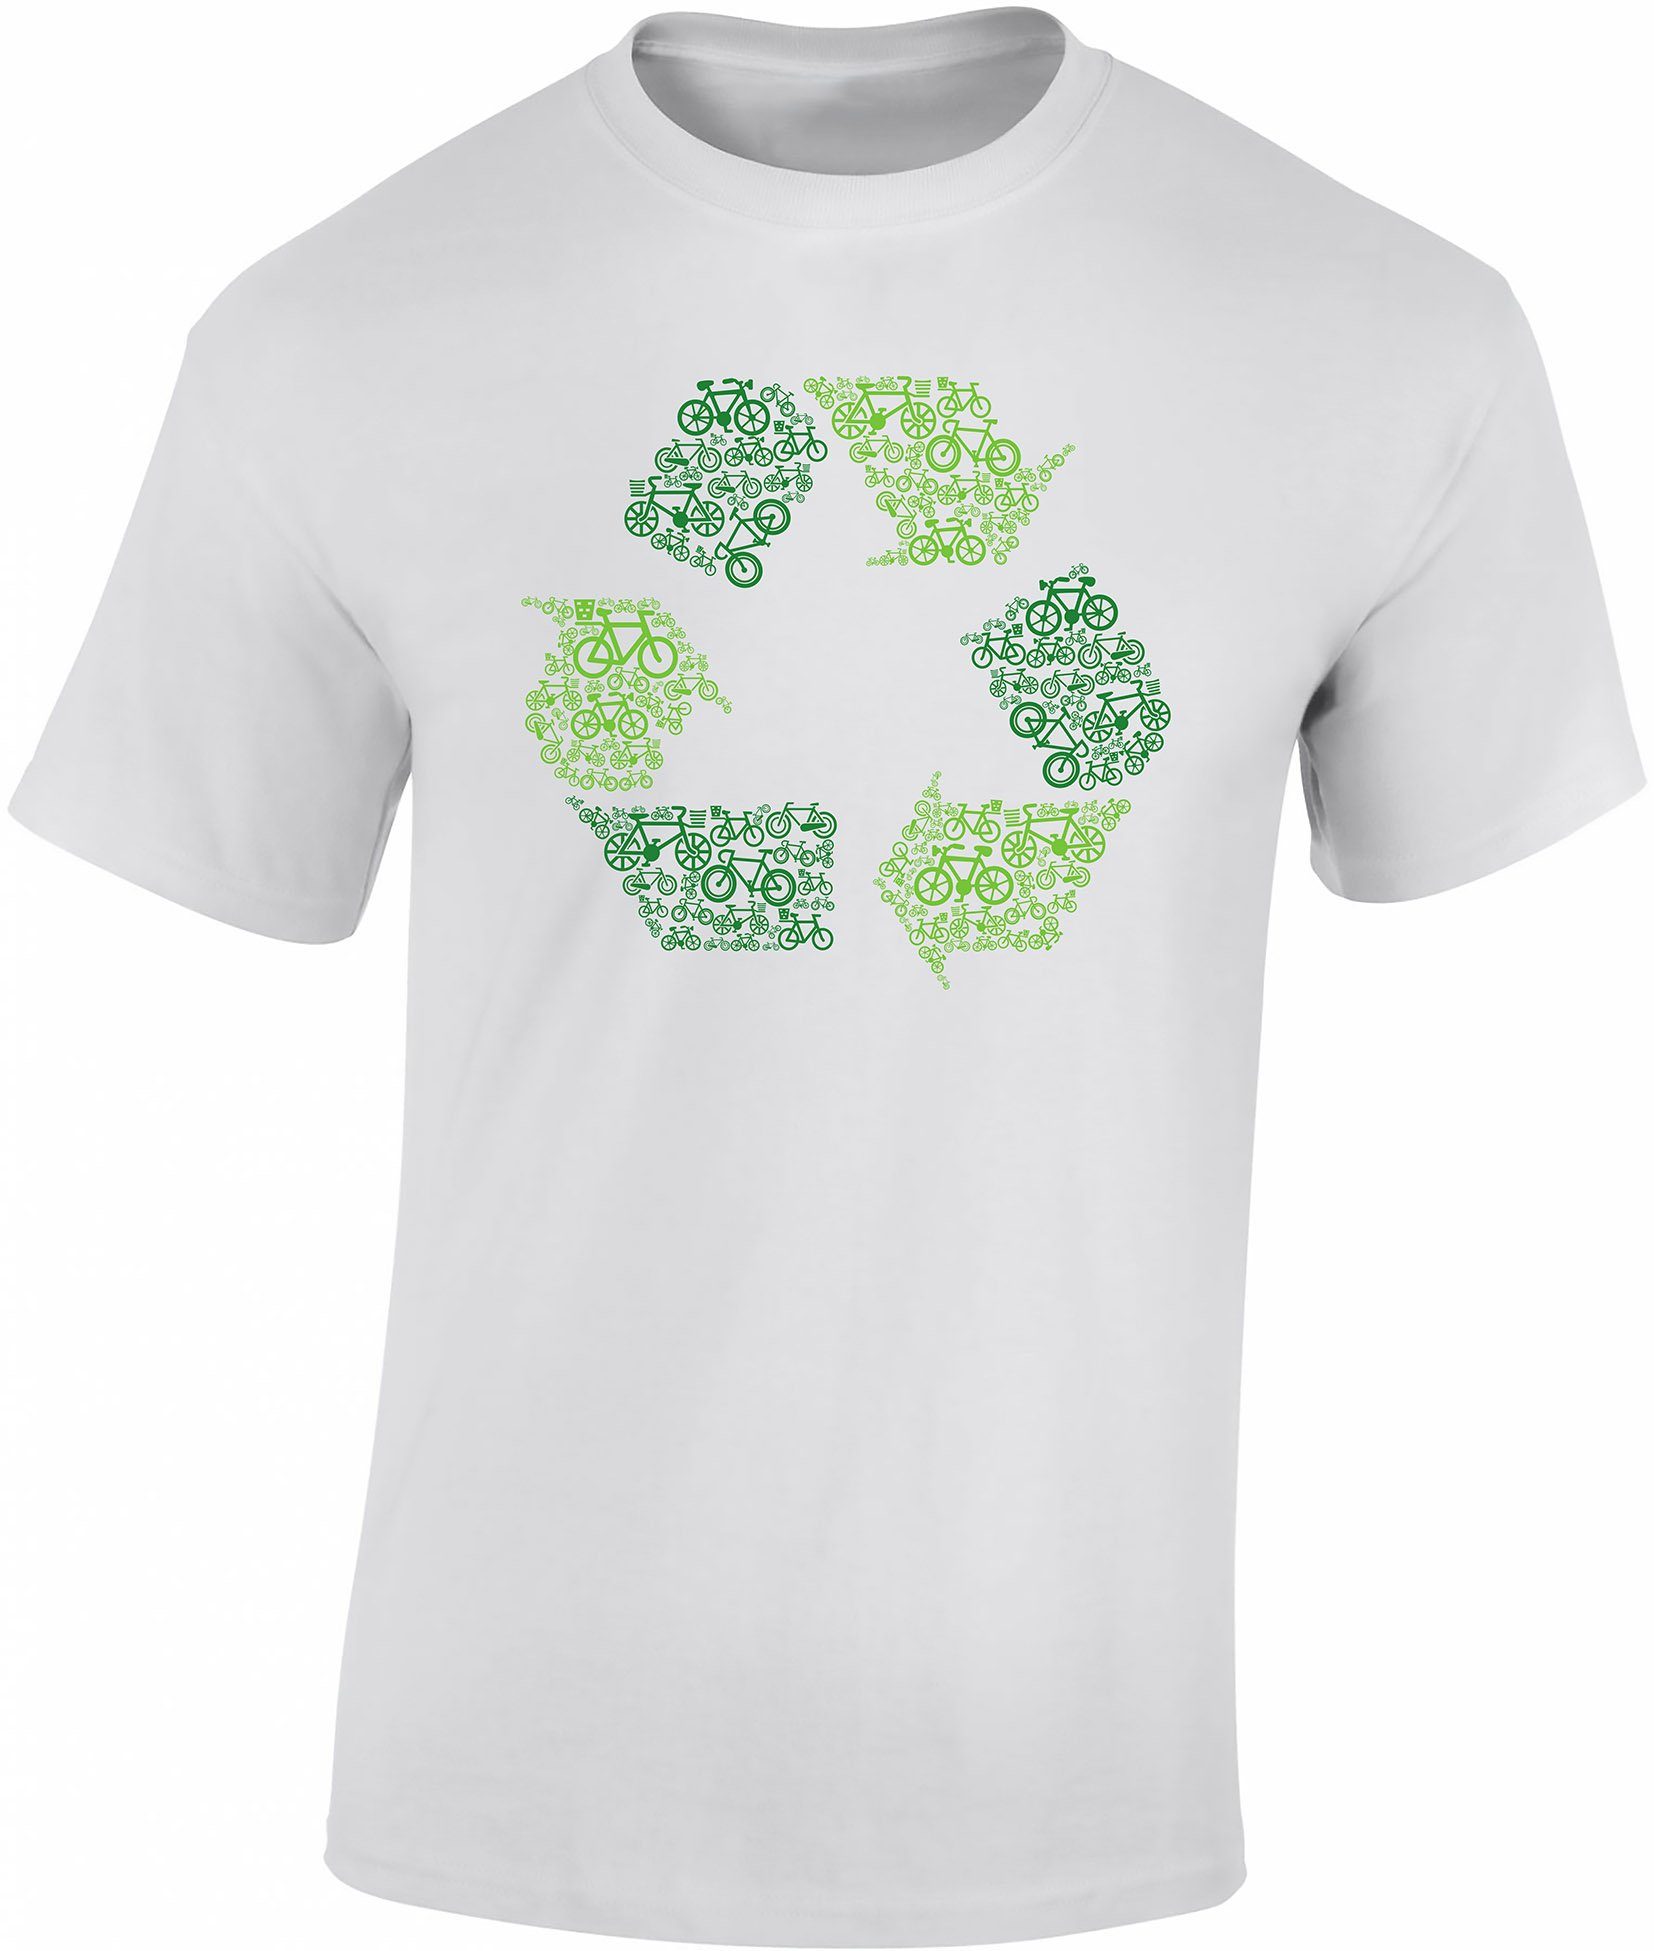 Sport ? Fahrrad Tshirts hochwertiger Siebdruck, - Print-Shirt : Übergrößen, aus T-Shirt Baddery auch Baumwolle Recycling Re-Cycling Herren, !